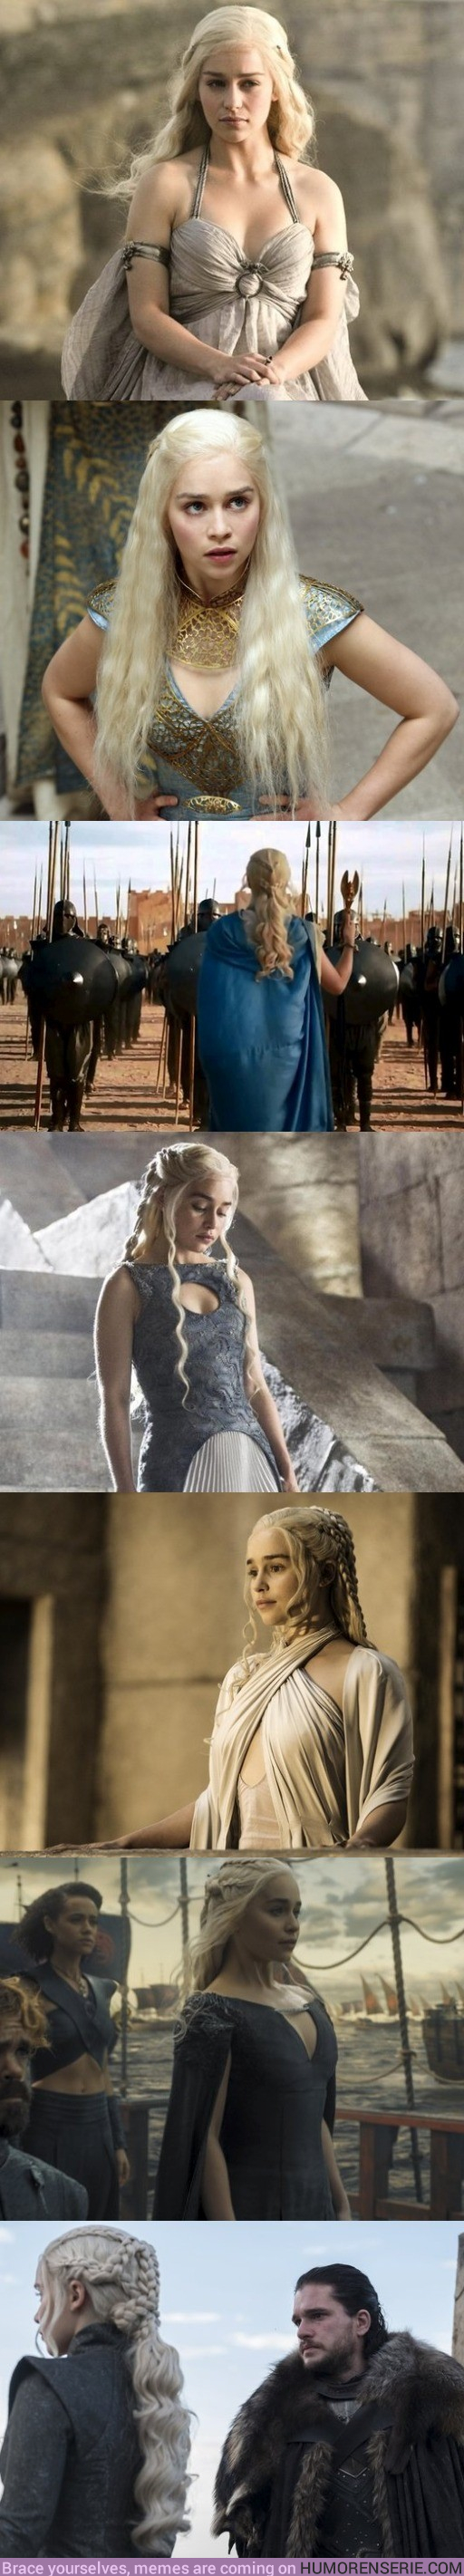 18411 - La evolución del peinado de Daenerys tiene un significado oculto